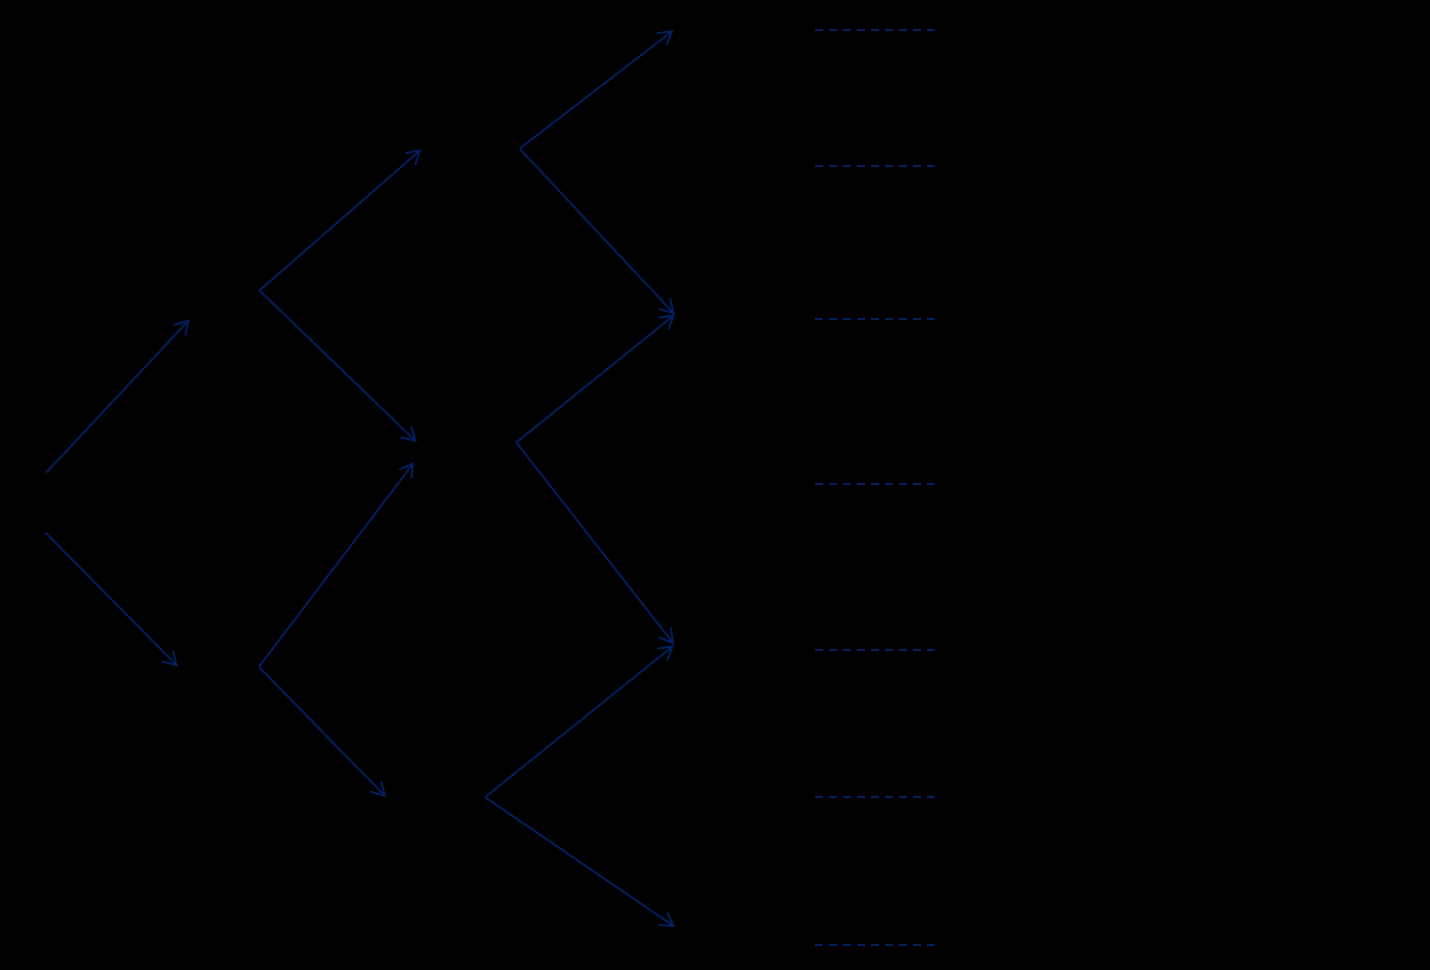 Modo de Entrada, Flexibilidad Estratégica y Opciones Reales en los Procesos de Internacionalización de las Cadenas Hoteleras anteriores, su valor en cada nudo del diagrama o árbol, como muestra la